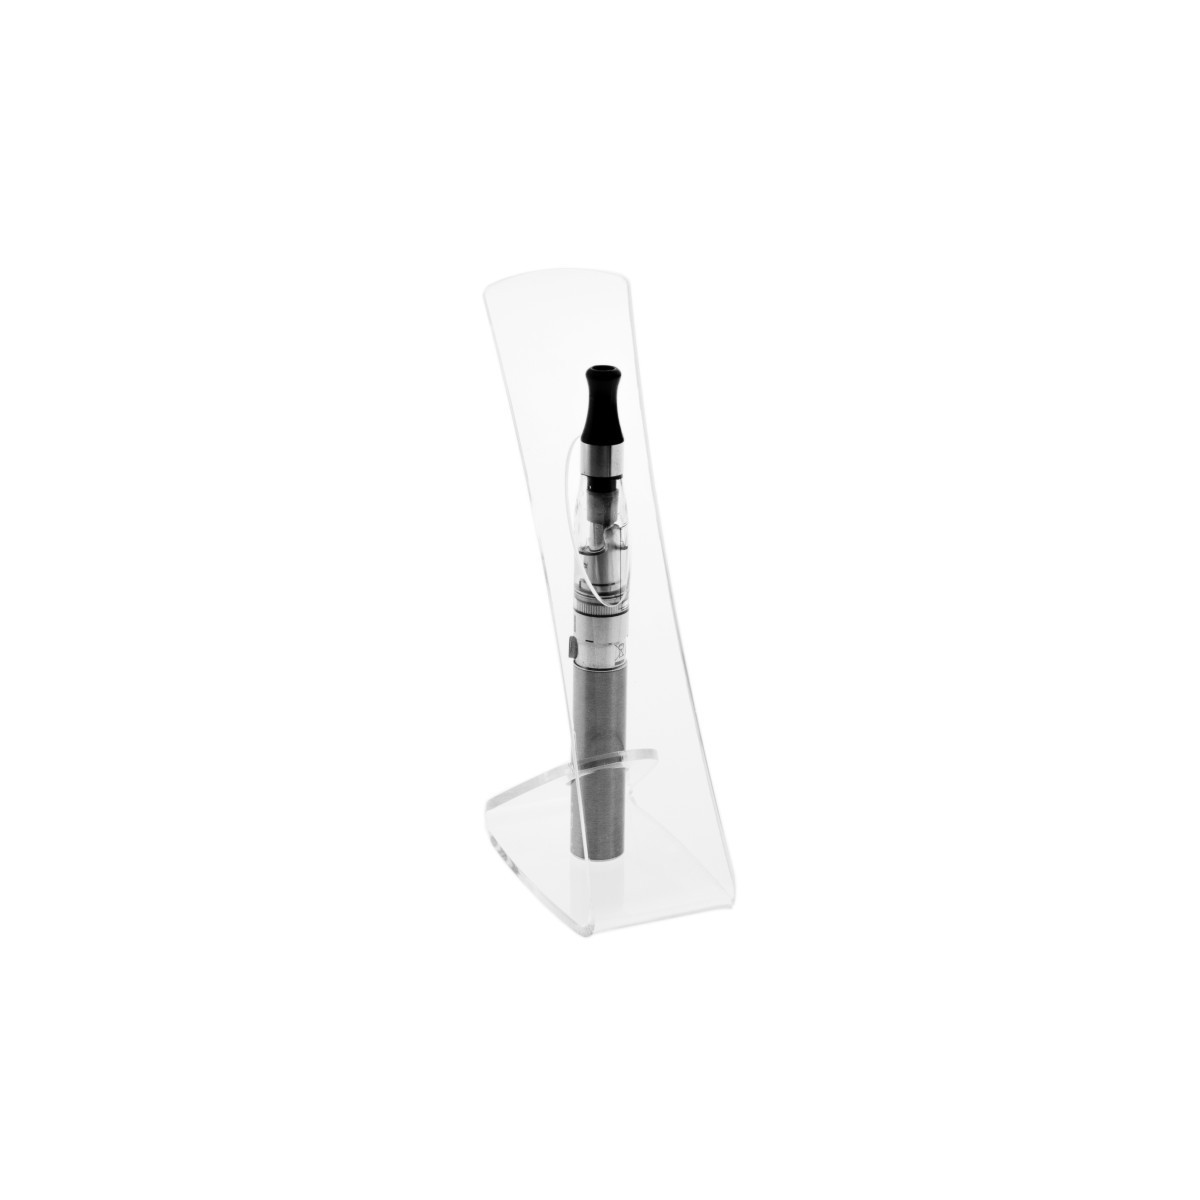 Porta sigaretta elettronica da banco in plexiglass trasparente- Misure: 5 x 9 x H15 cm